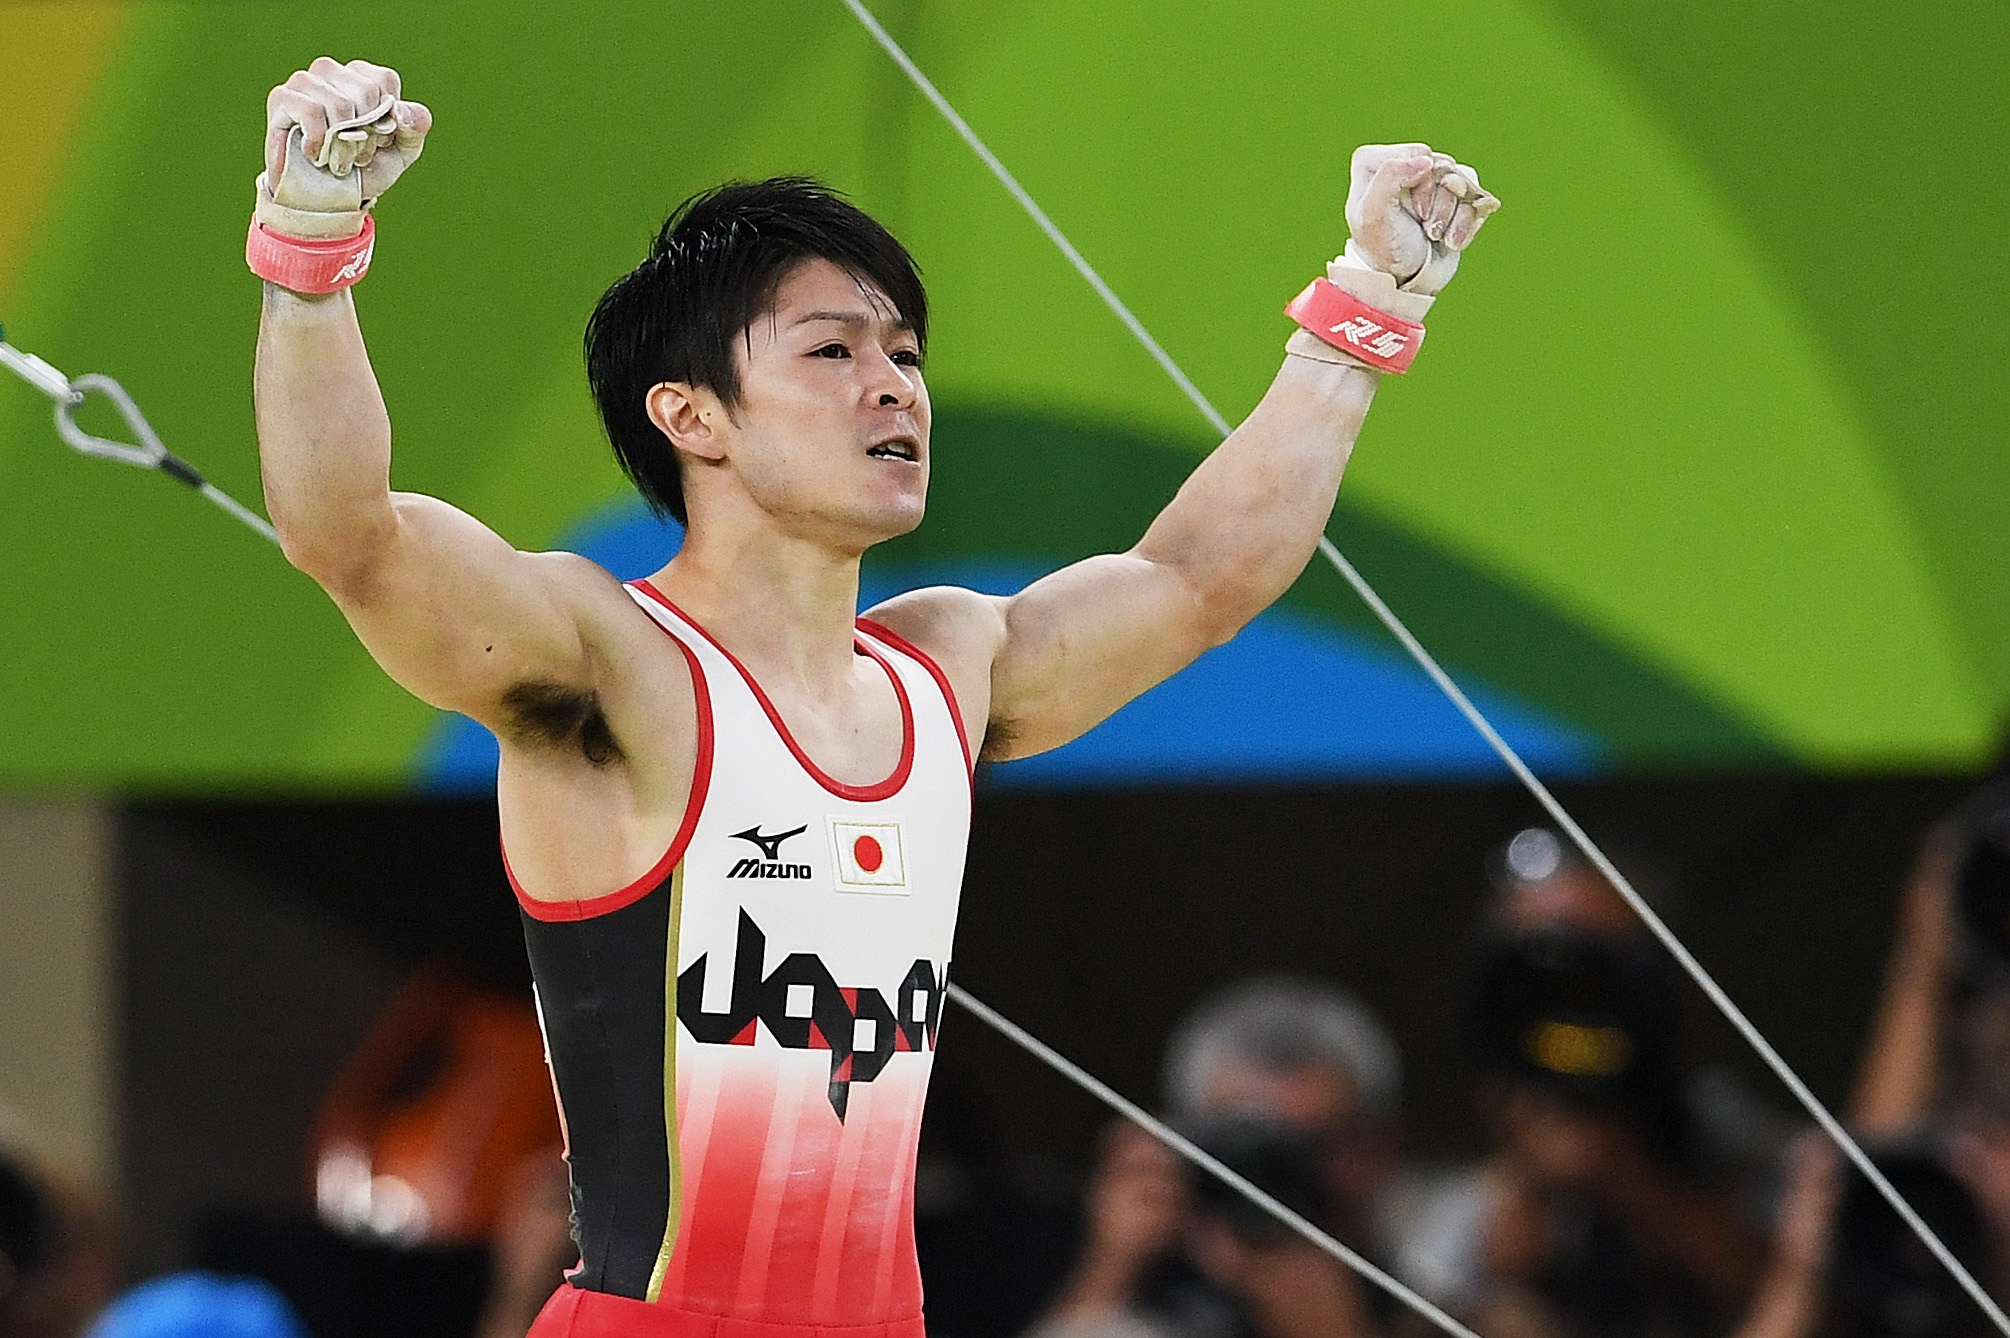 Rio 16 Olympics Japan S Kohei Uchimura Wins All Around Time